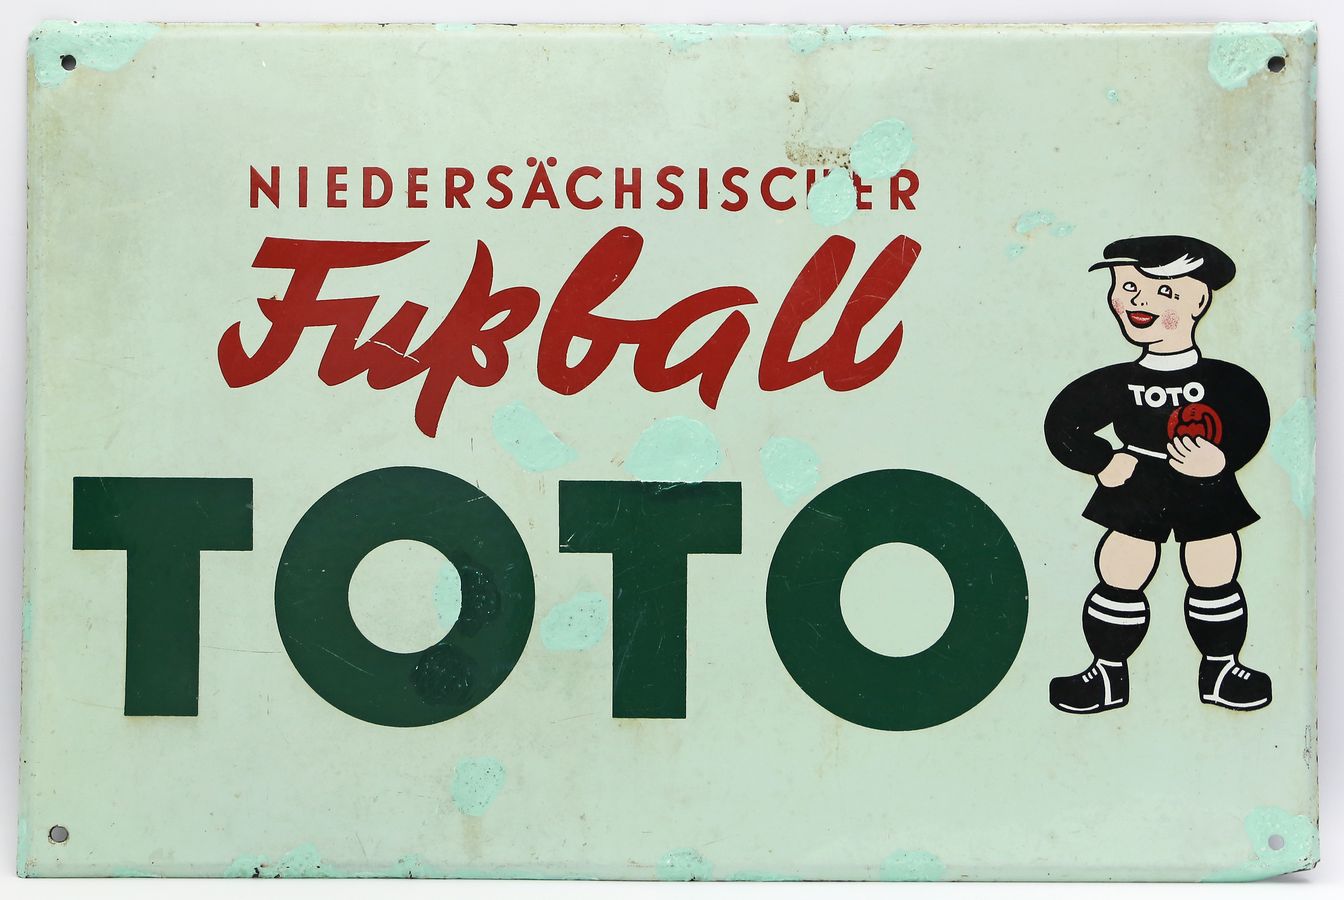 Emailschild "Niedersächsischer Fußball - TOTO".